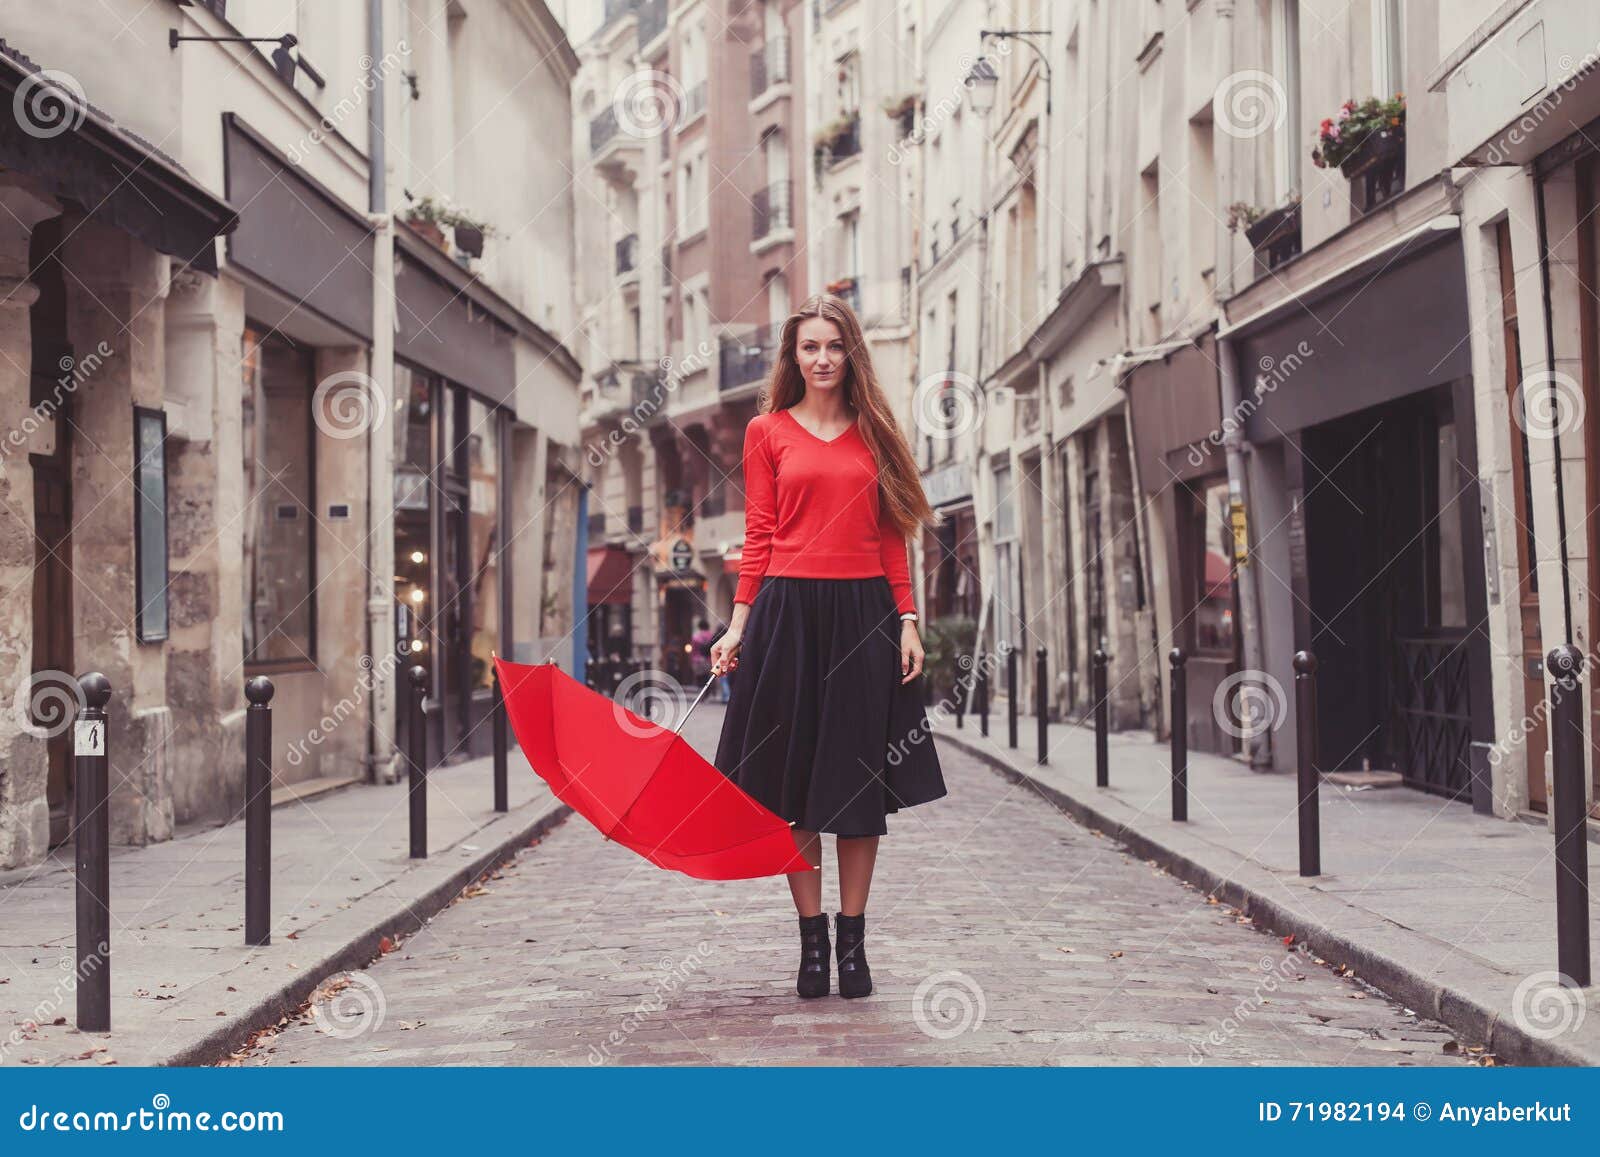 Pretty Lady Shopping in Paris Umbrella Trouwen Accessoires Paraplus 